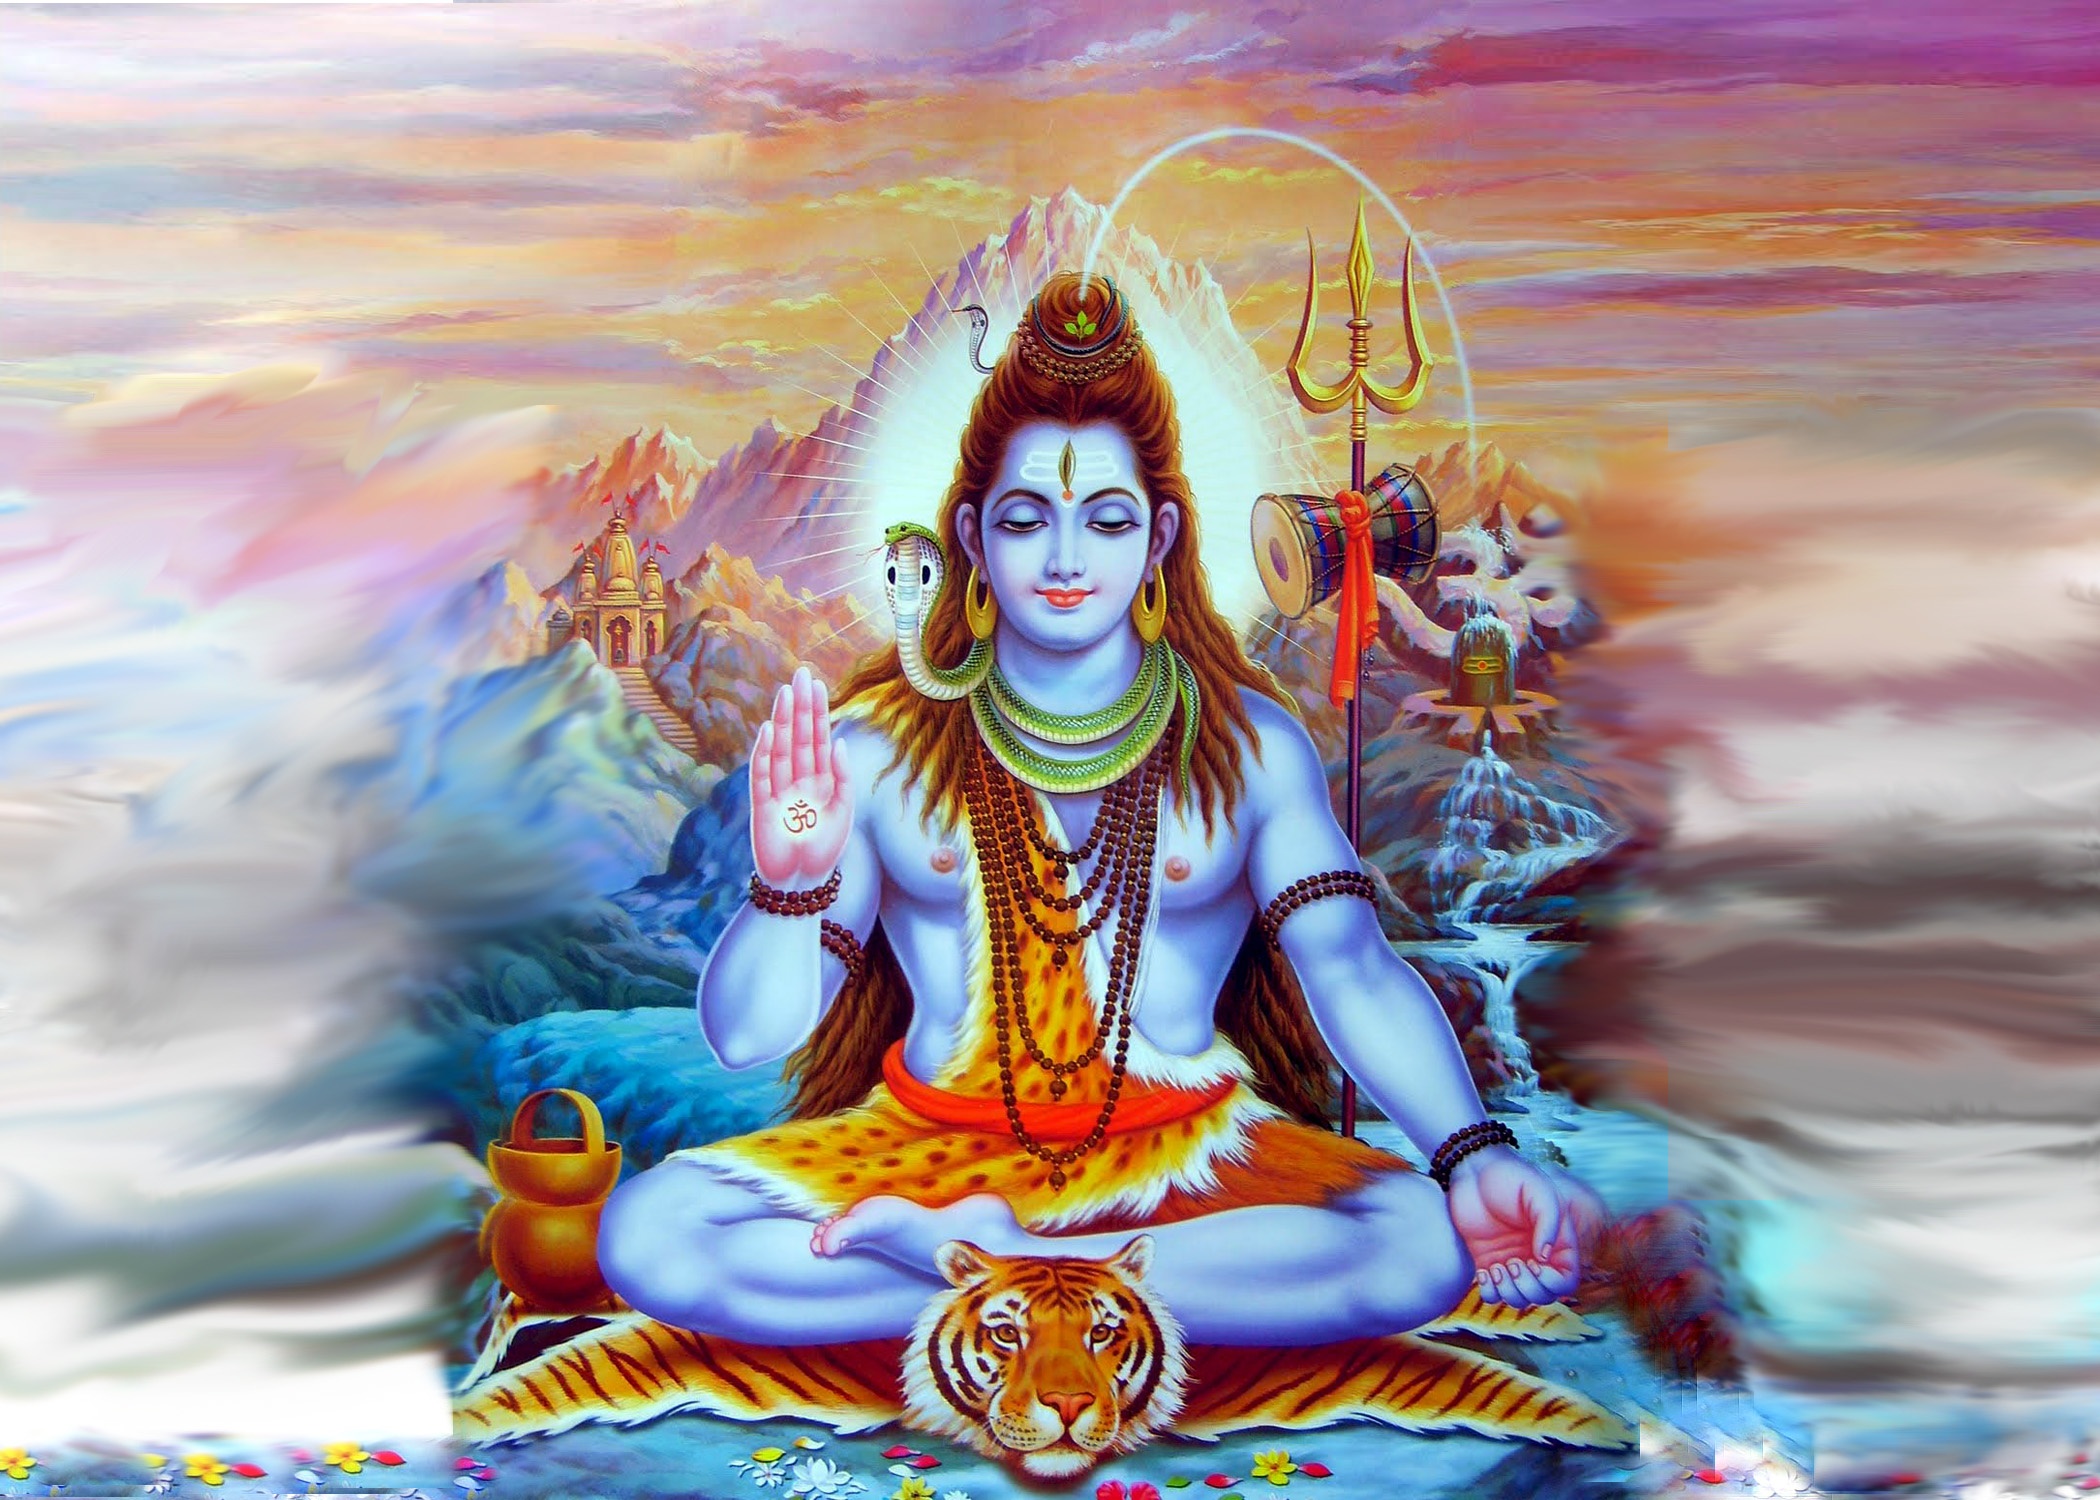 Shiva "Ničitel"